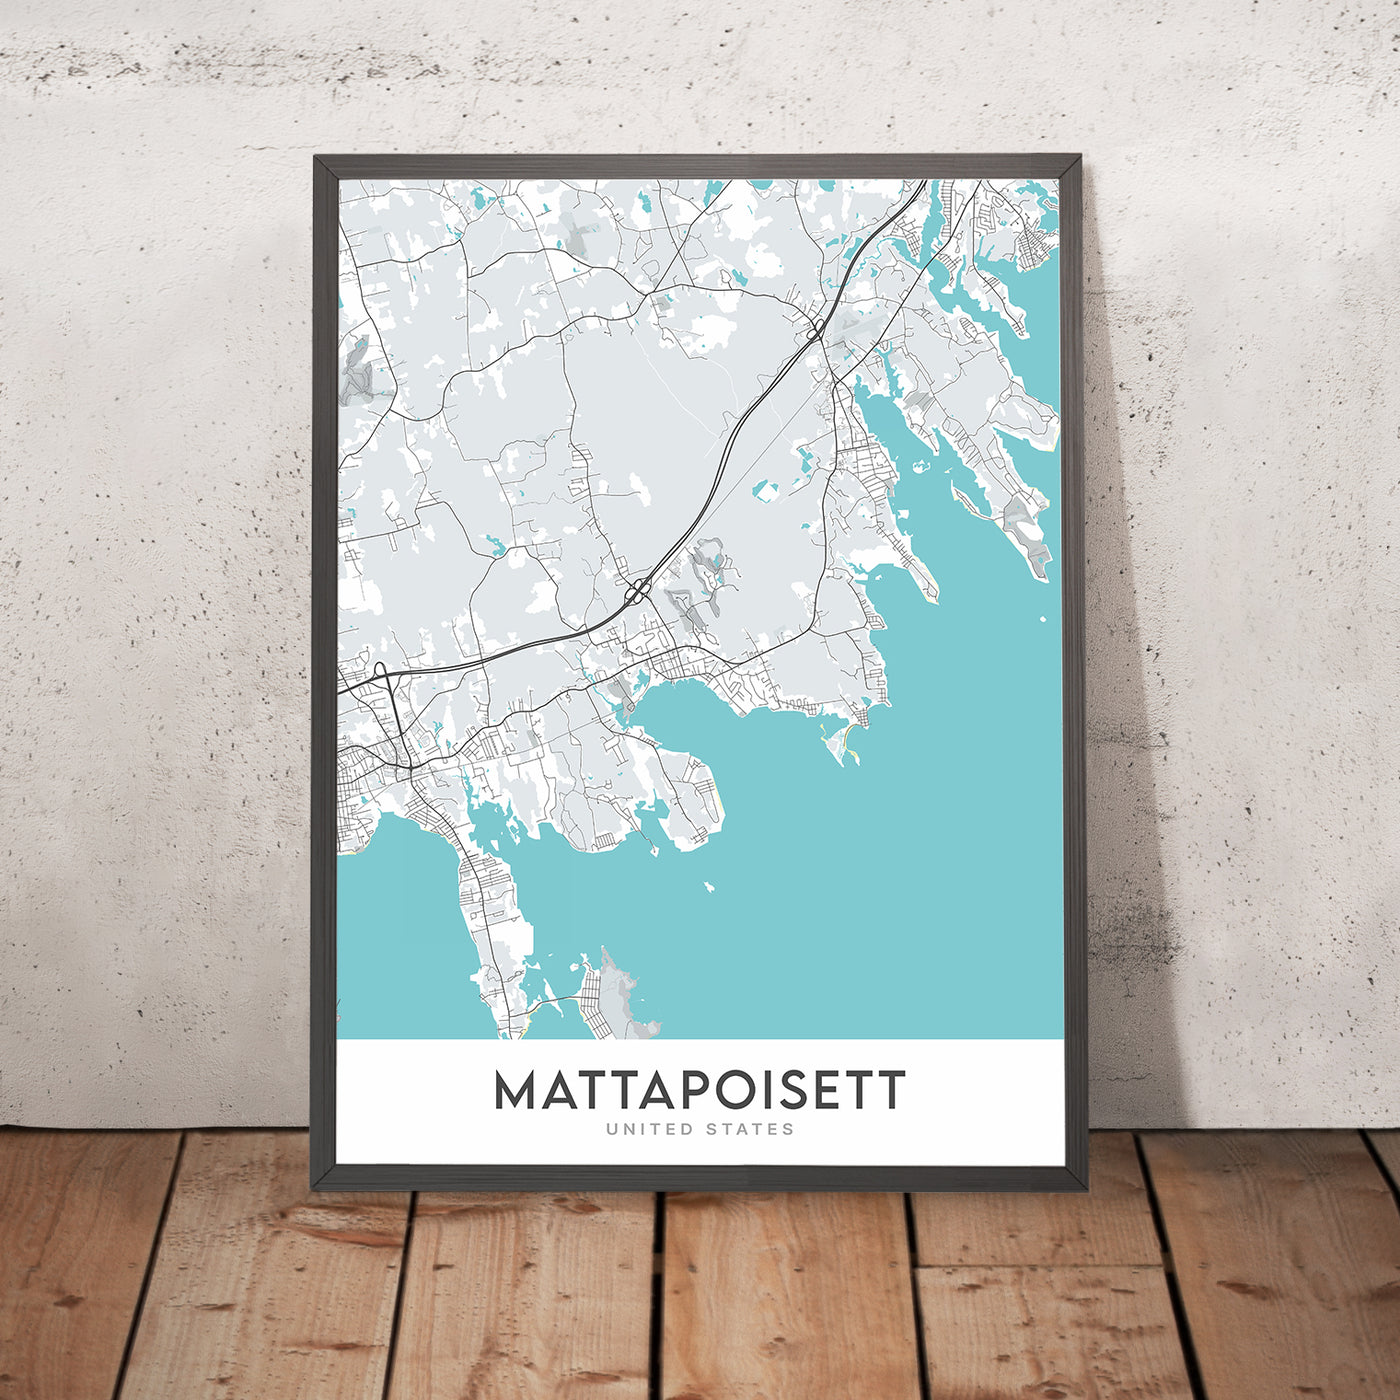 Plan de la ville moderne de Mattapoisett, MA : Mattapoisett Center, Mattapoisett Neck, North Mattapoisett, hôtel de ville de Mattapoisett, bibliothèque publique gratuite de Mattapoisett